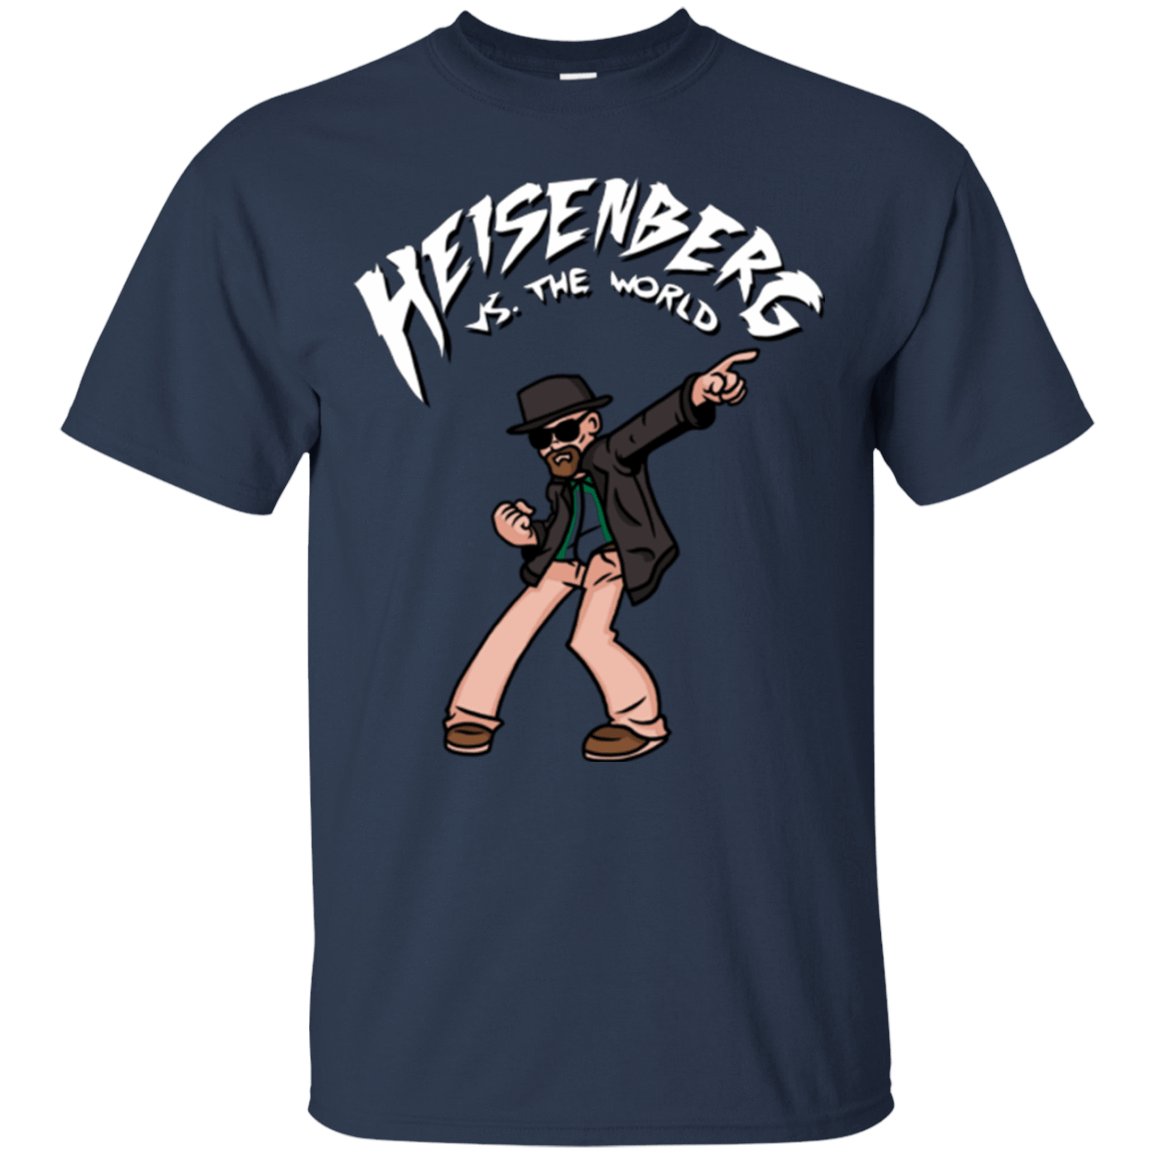 T-Shirts Navy / Small Heisenberg vs the World T-Shirt